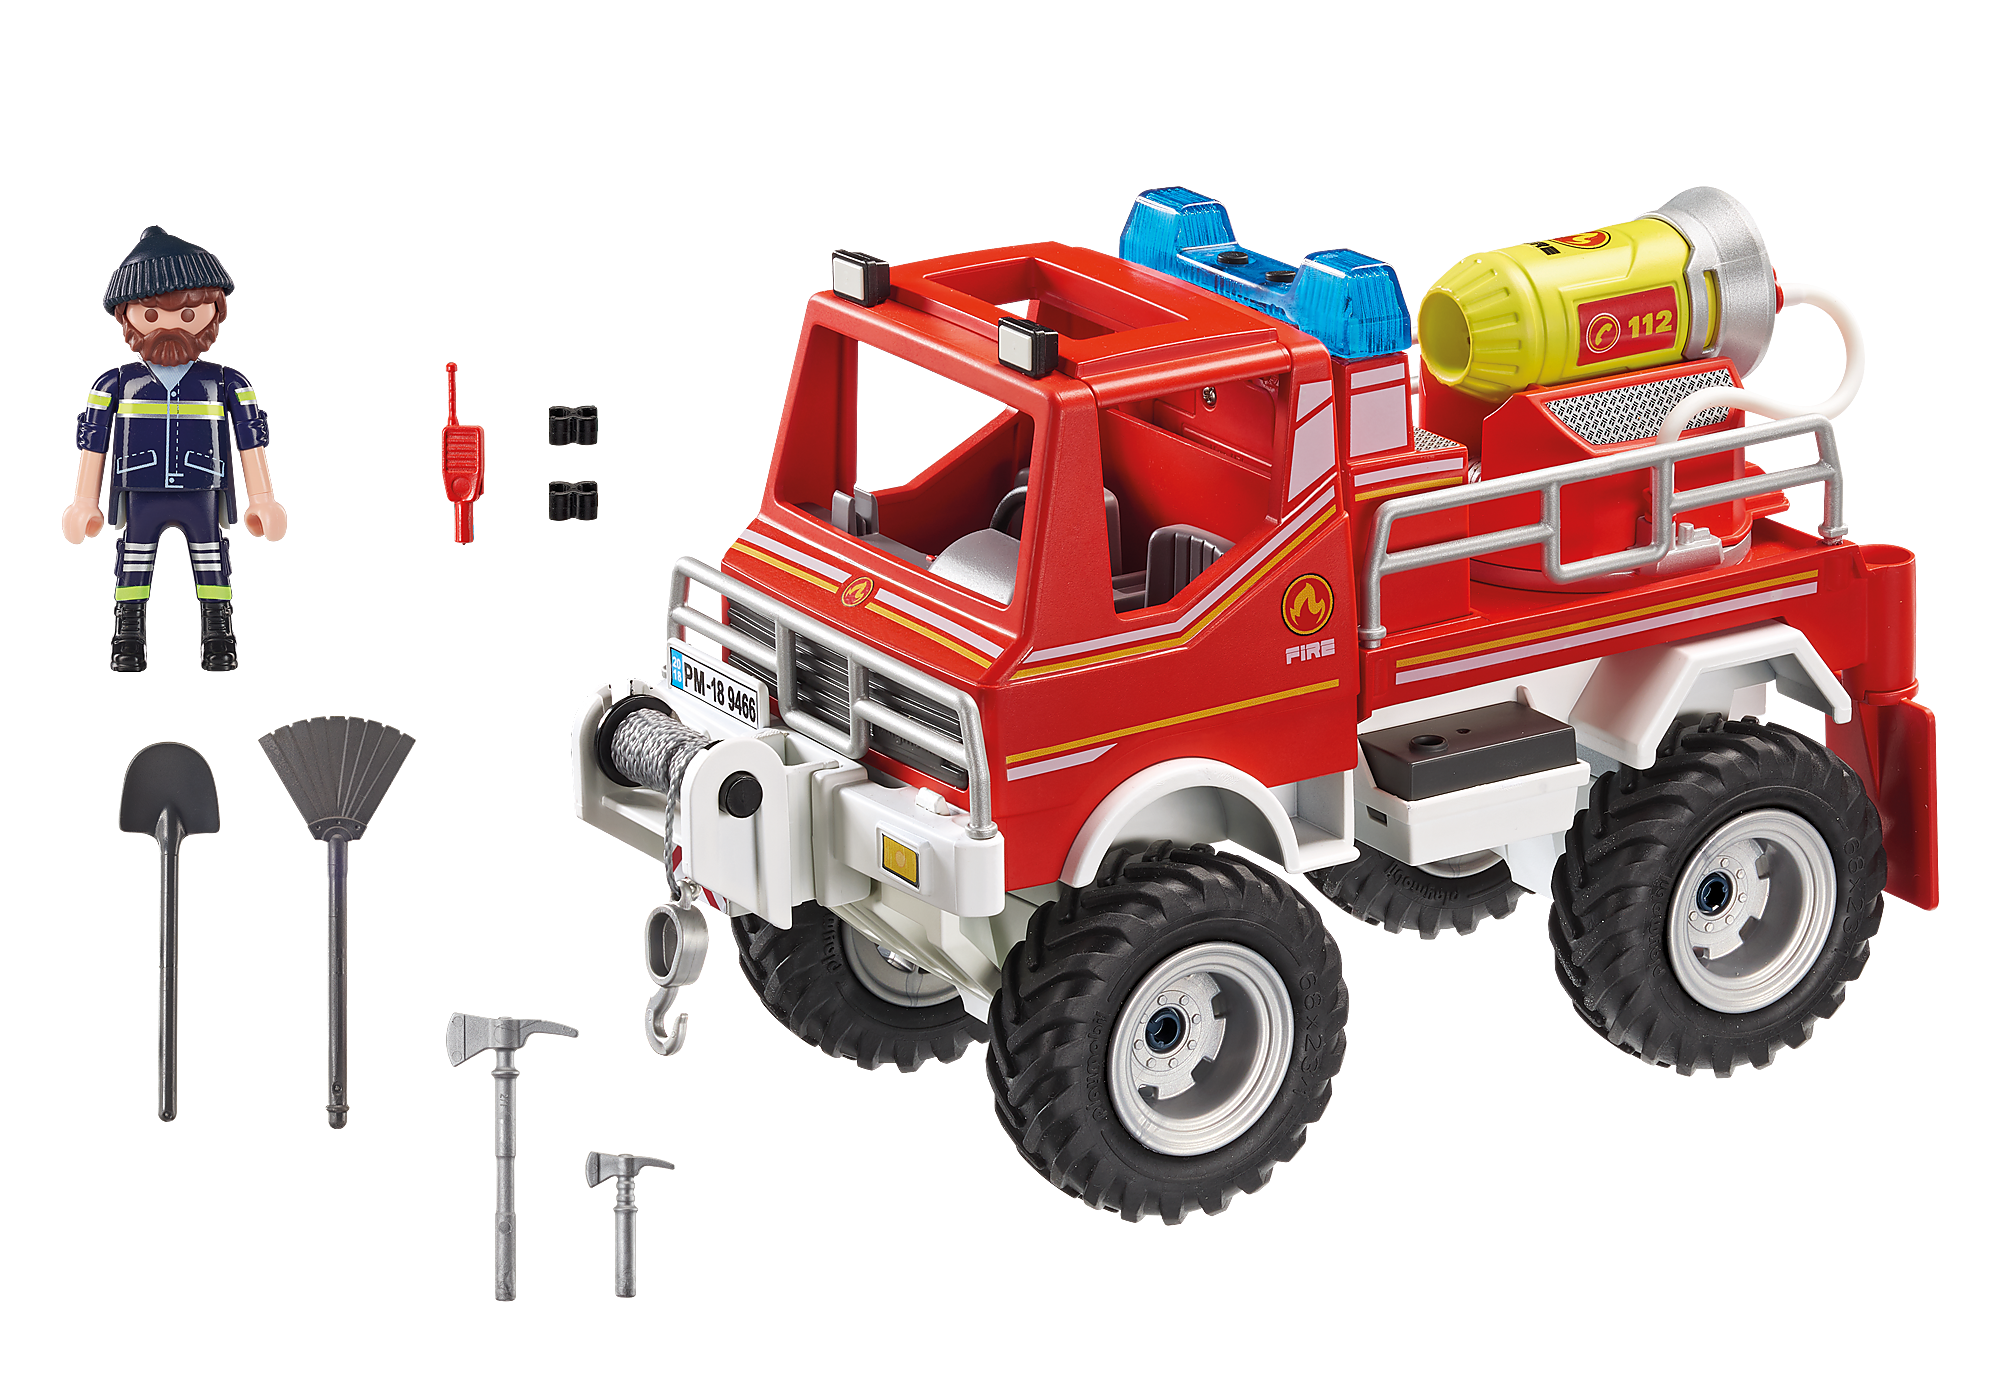 Brandweer terreinwagen met waterkanon 9466 | PLAYMOBIL®